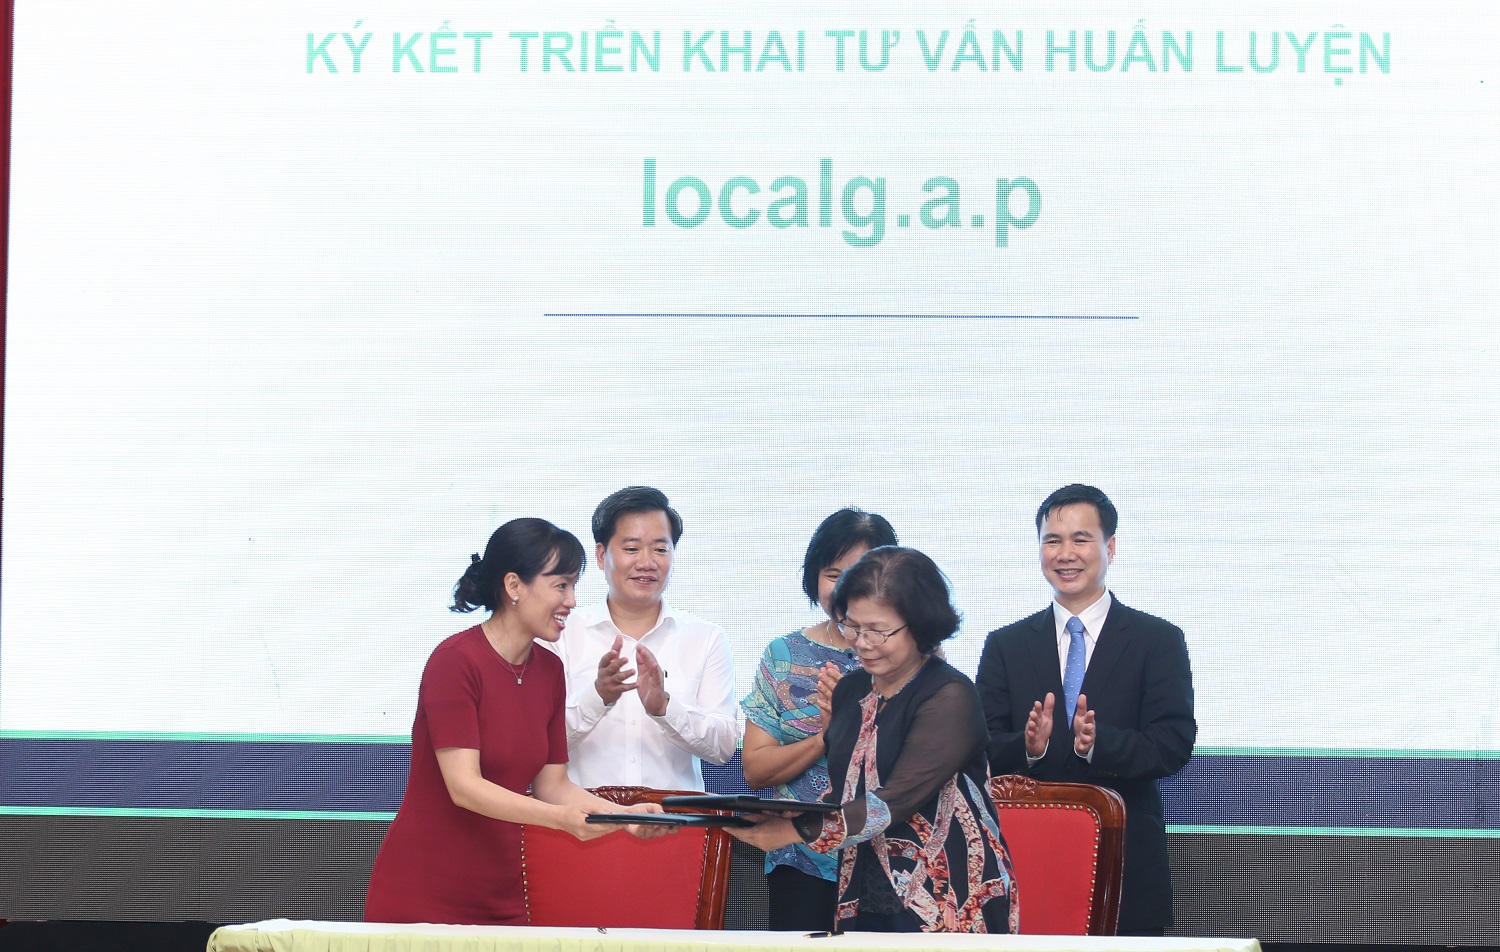 Bà Vũ Kim Hạnh, (trái) chủ tịch HDNHVNCLC cùng bà Từ Thu Hiền, Tổ chức Hỗ trợ dân tộc thiểu số cải thiện sinh kế, thuộc Ủy ban Dân tộc Quốc hội ký kết tập huấn LocalGap. 